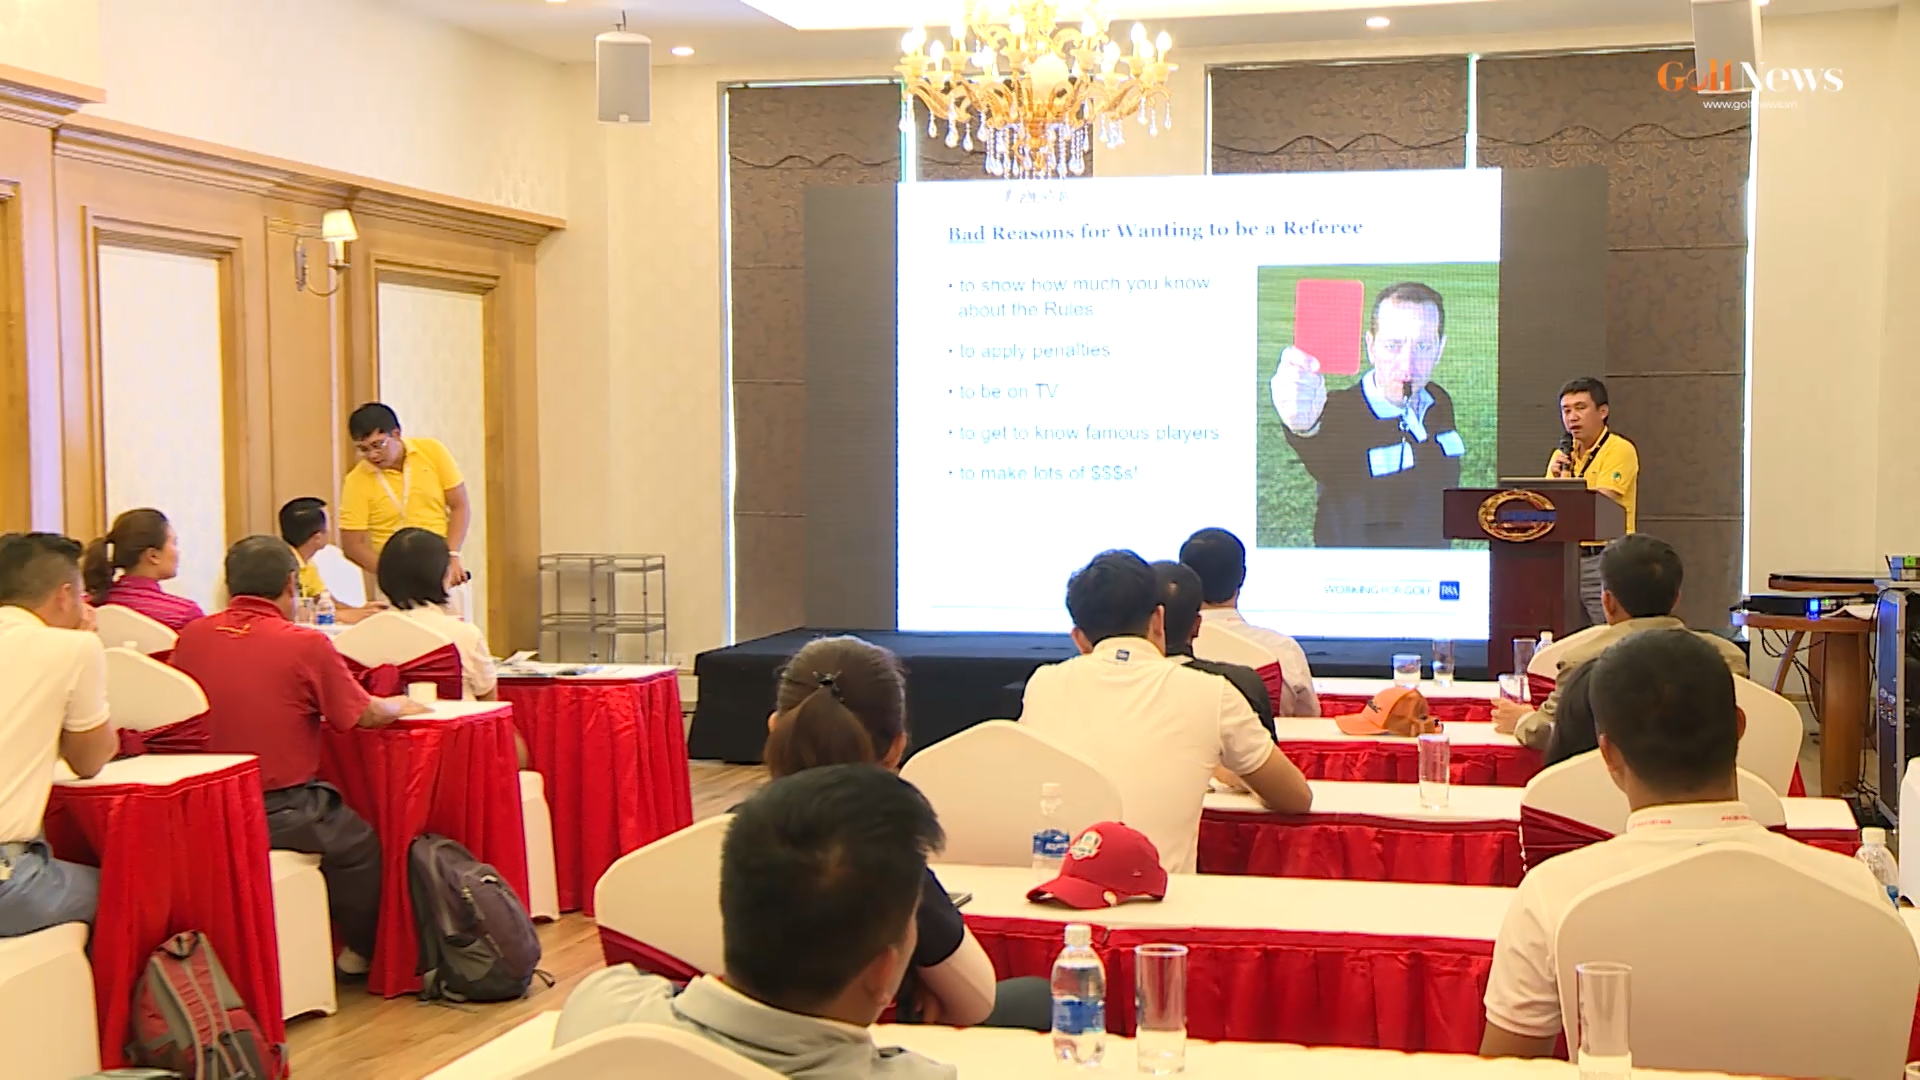 Lớp Trọng tài R&A Level 2: Góp phần nâng cao chuyên môn ngành golf Việt